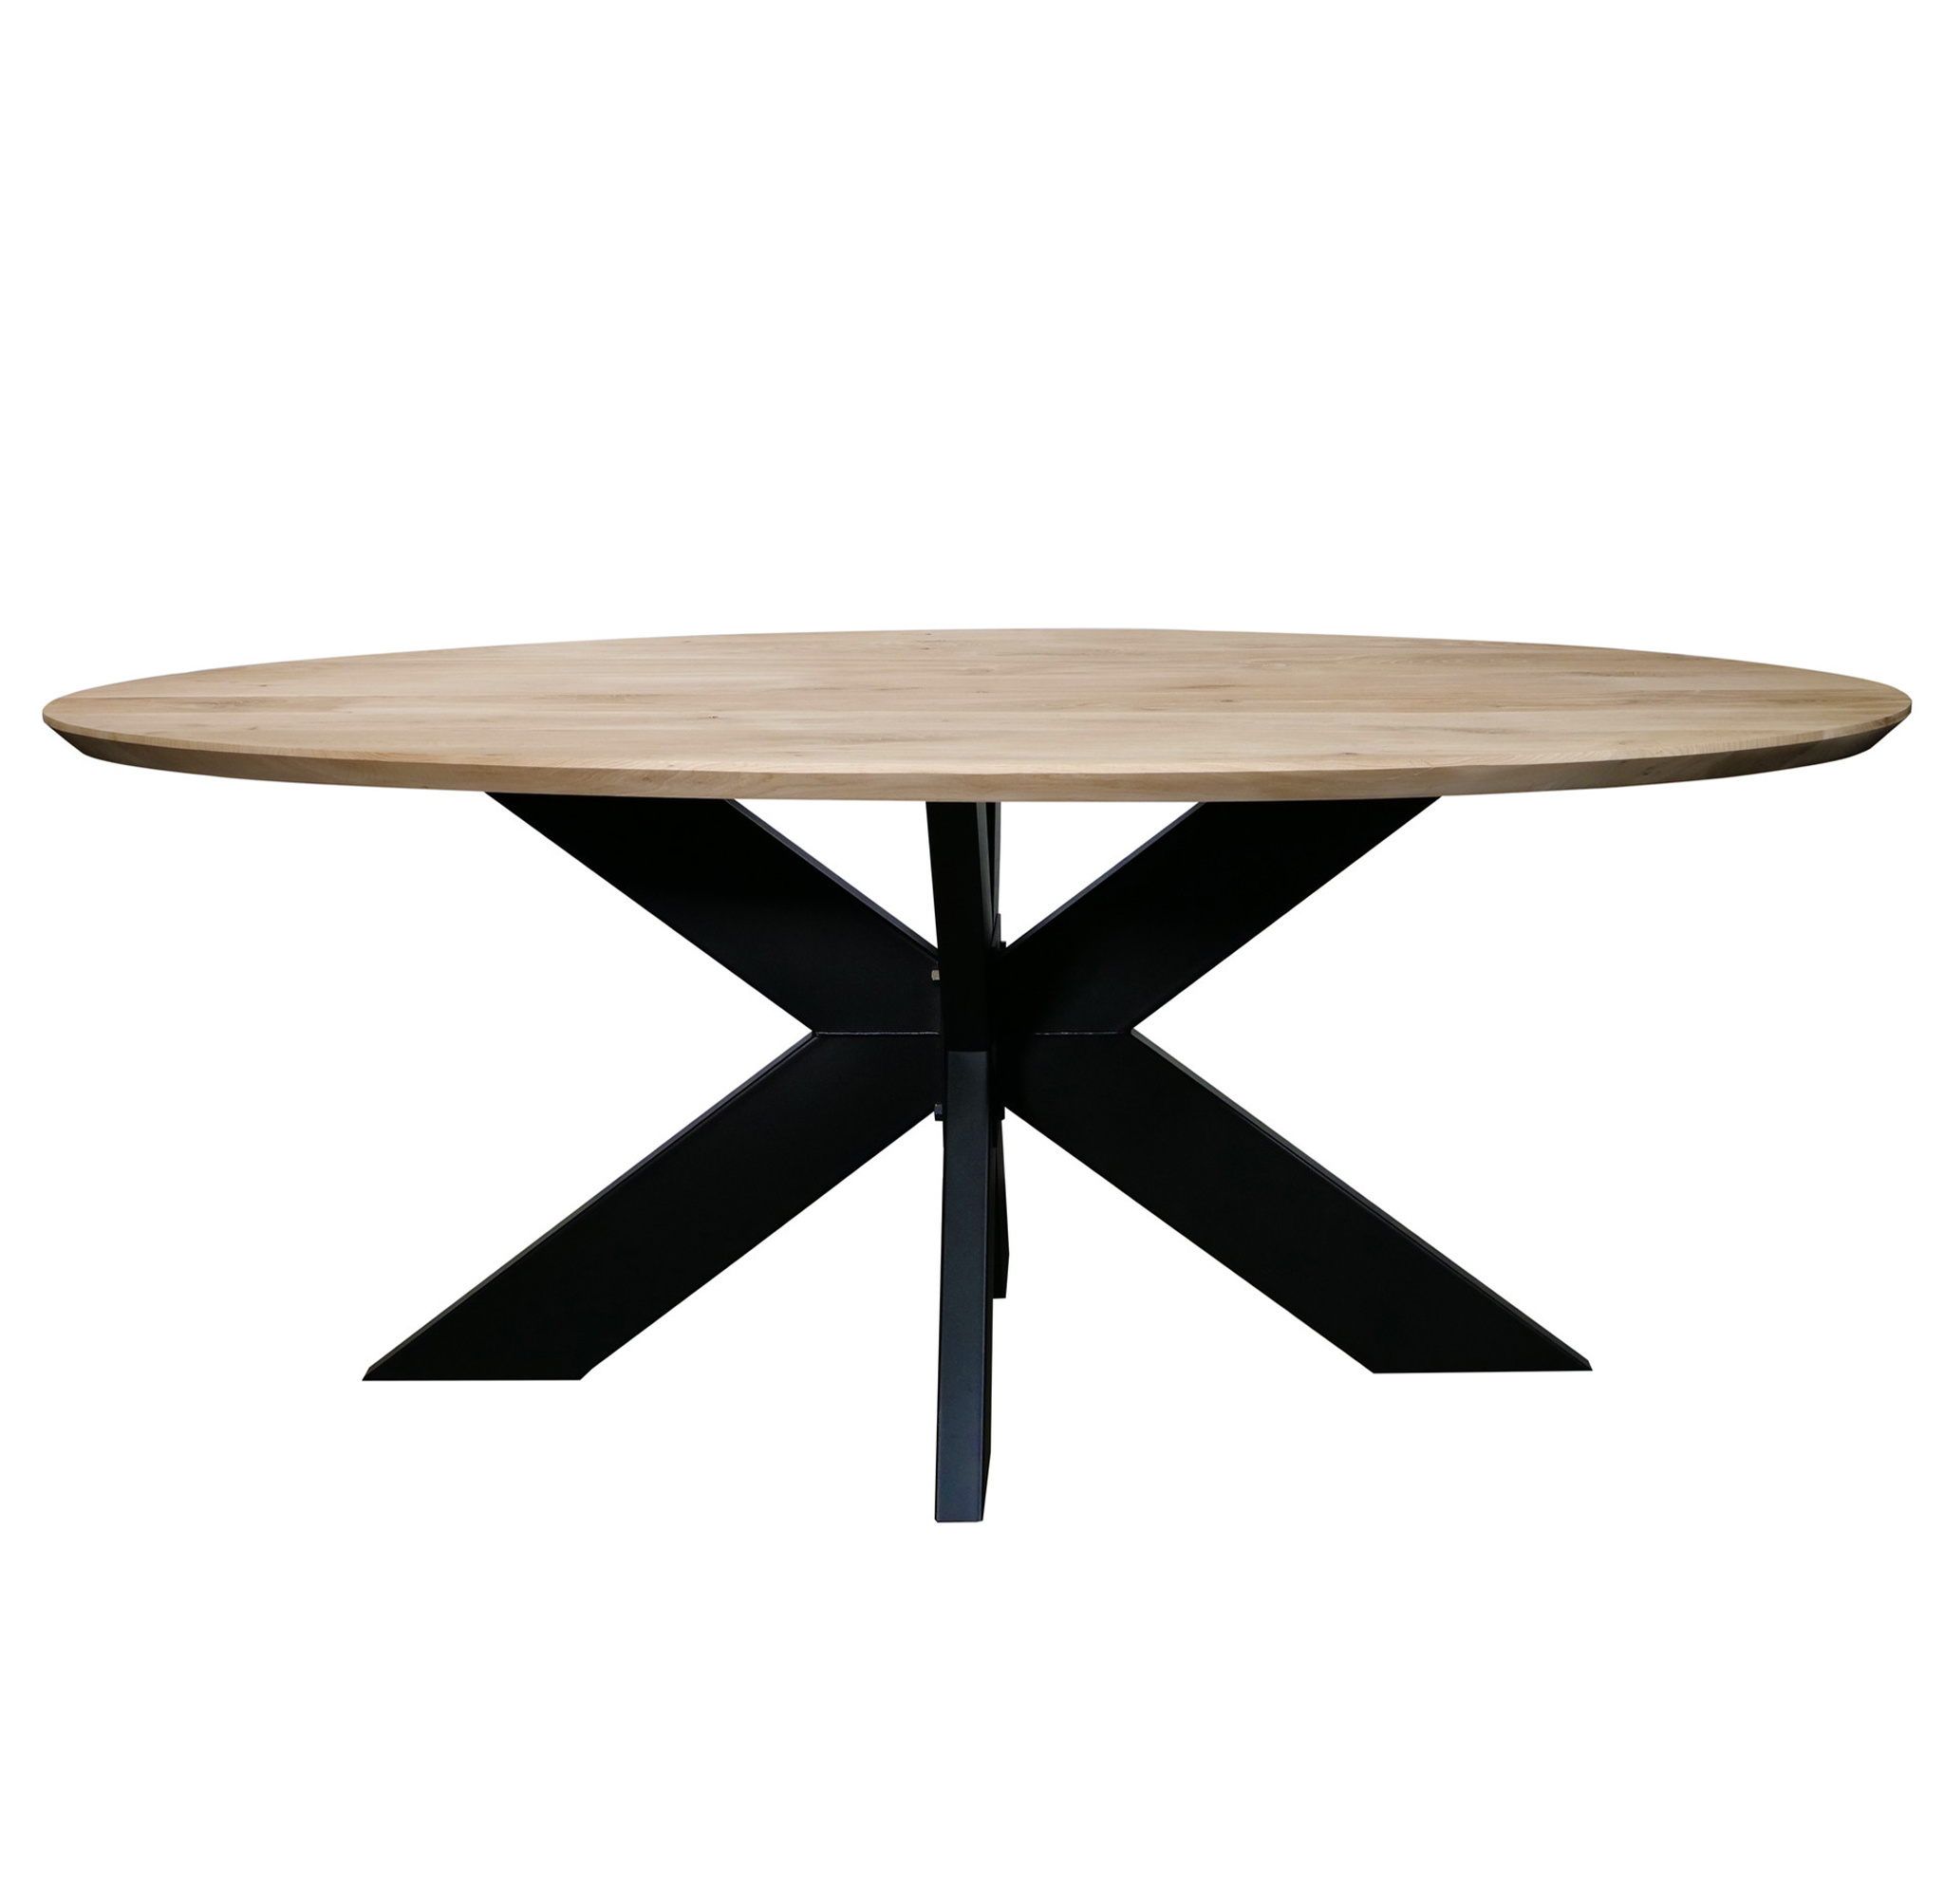  Eiken tafelblad ovaal - 4 cm dik (1-laag) - Diverse afmetingen - optioneel geborsteld - Rustiek Europees eikenhout - verlijmd kd 10-12%